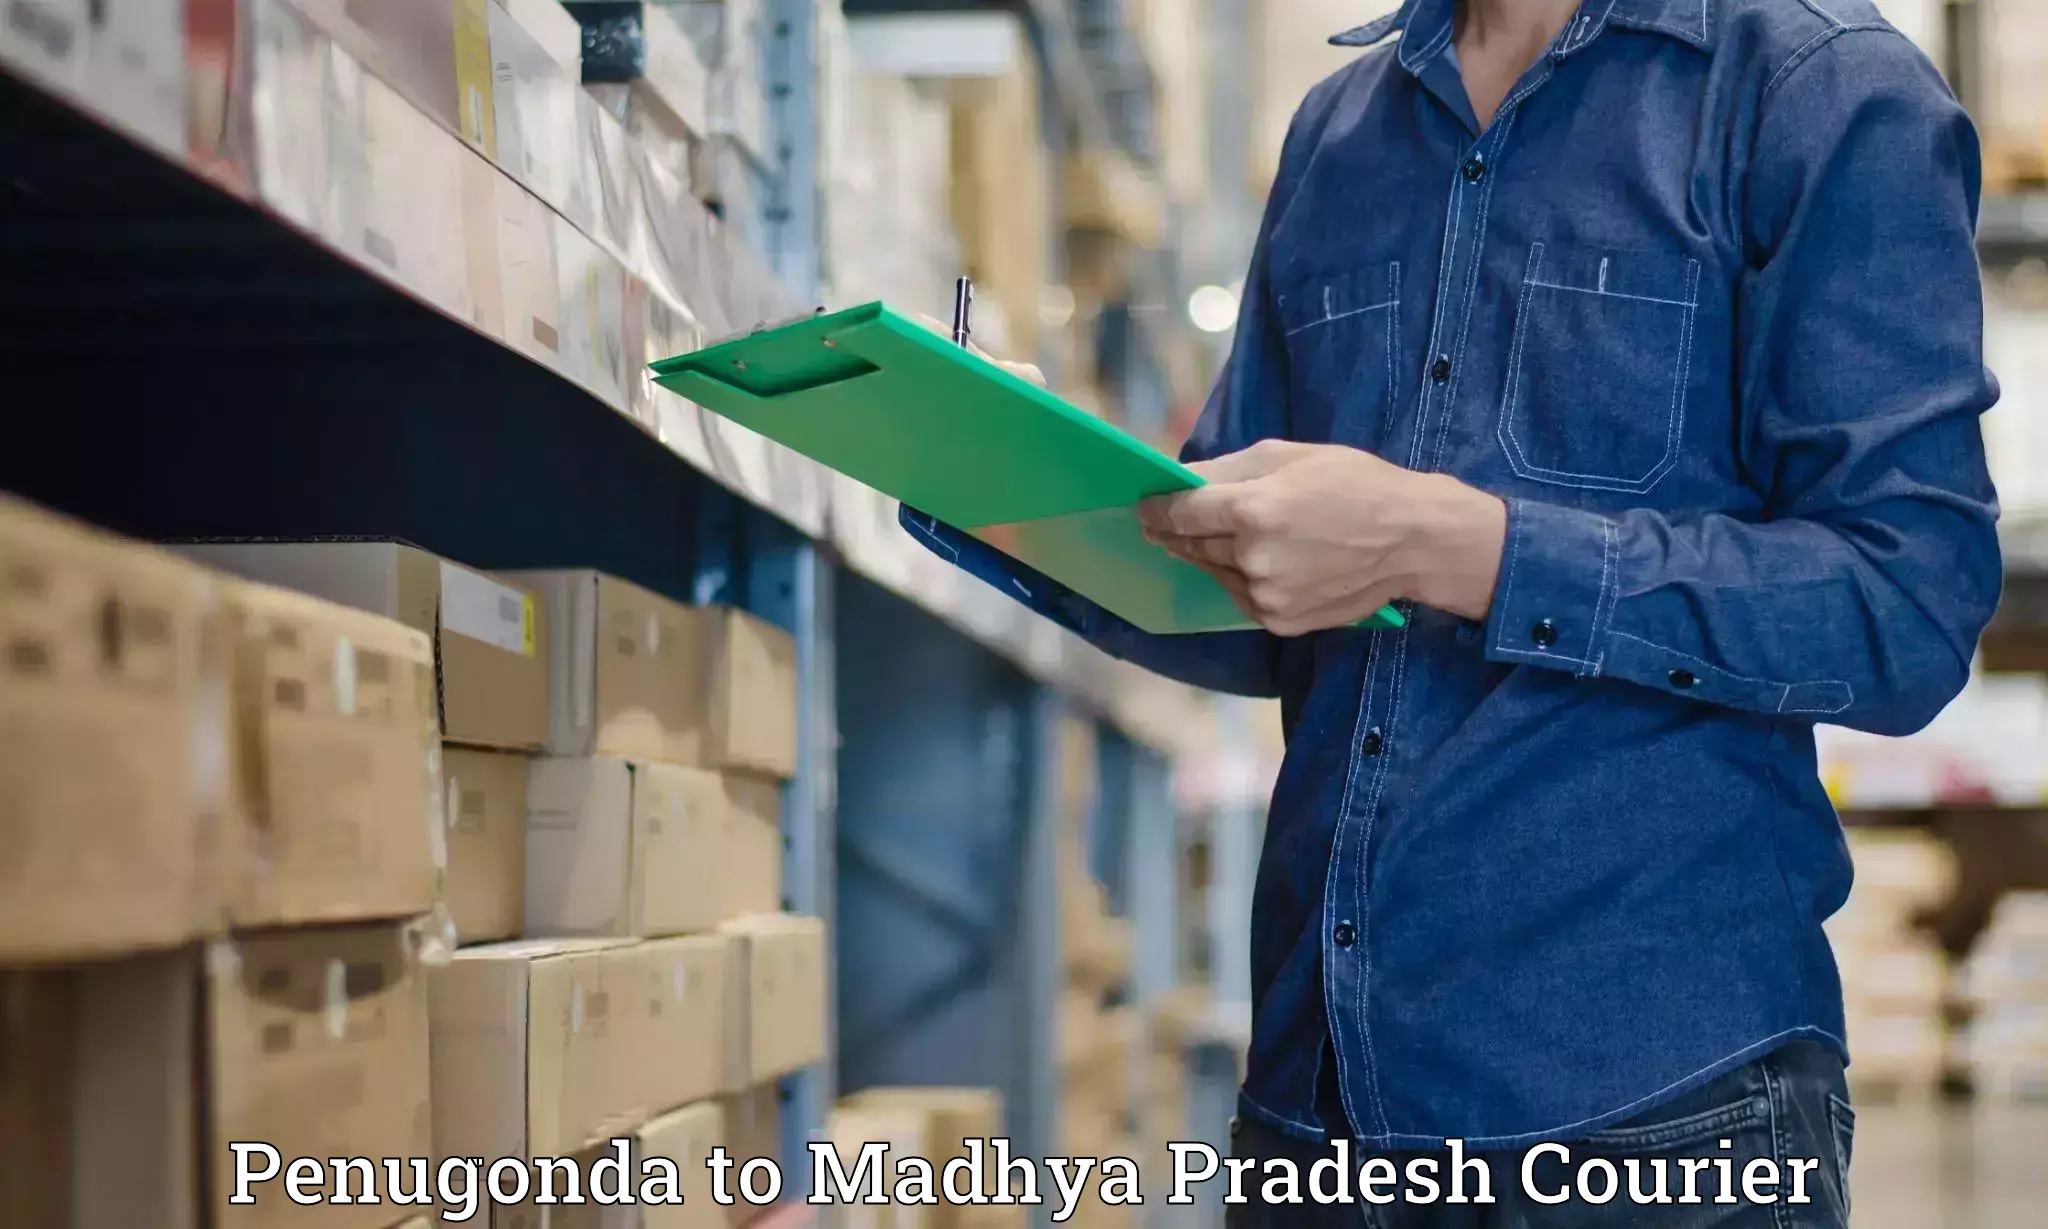 Cash on delivery service Penugonda to Shahgarh